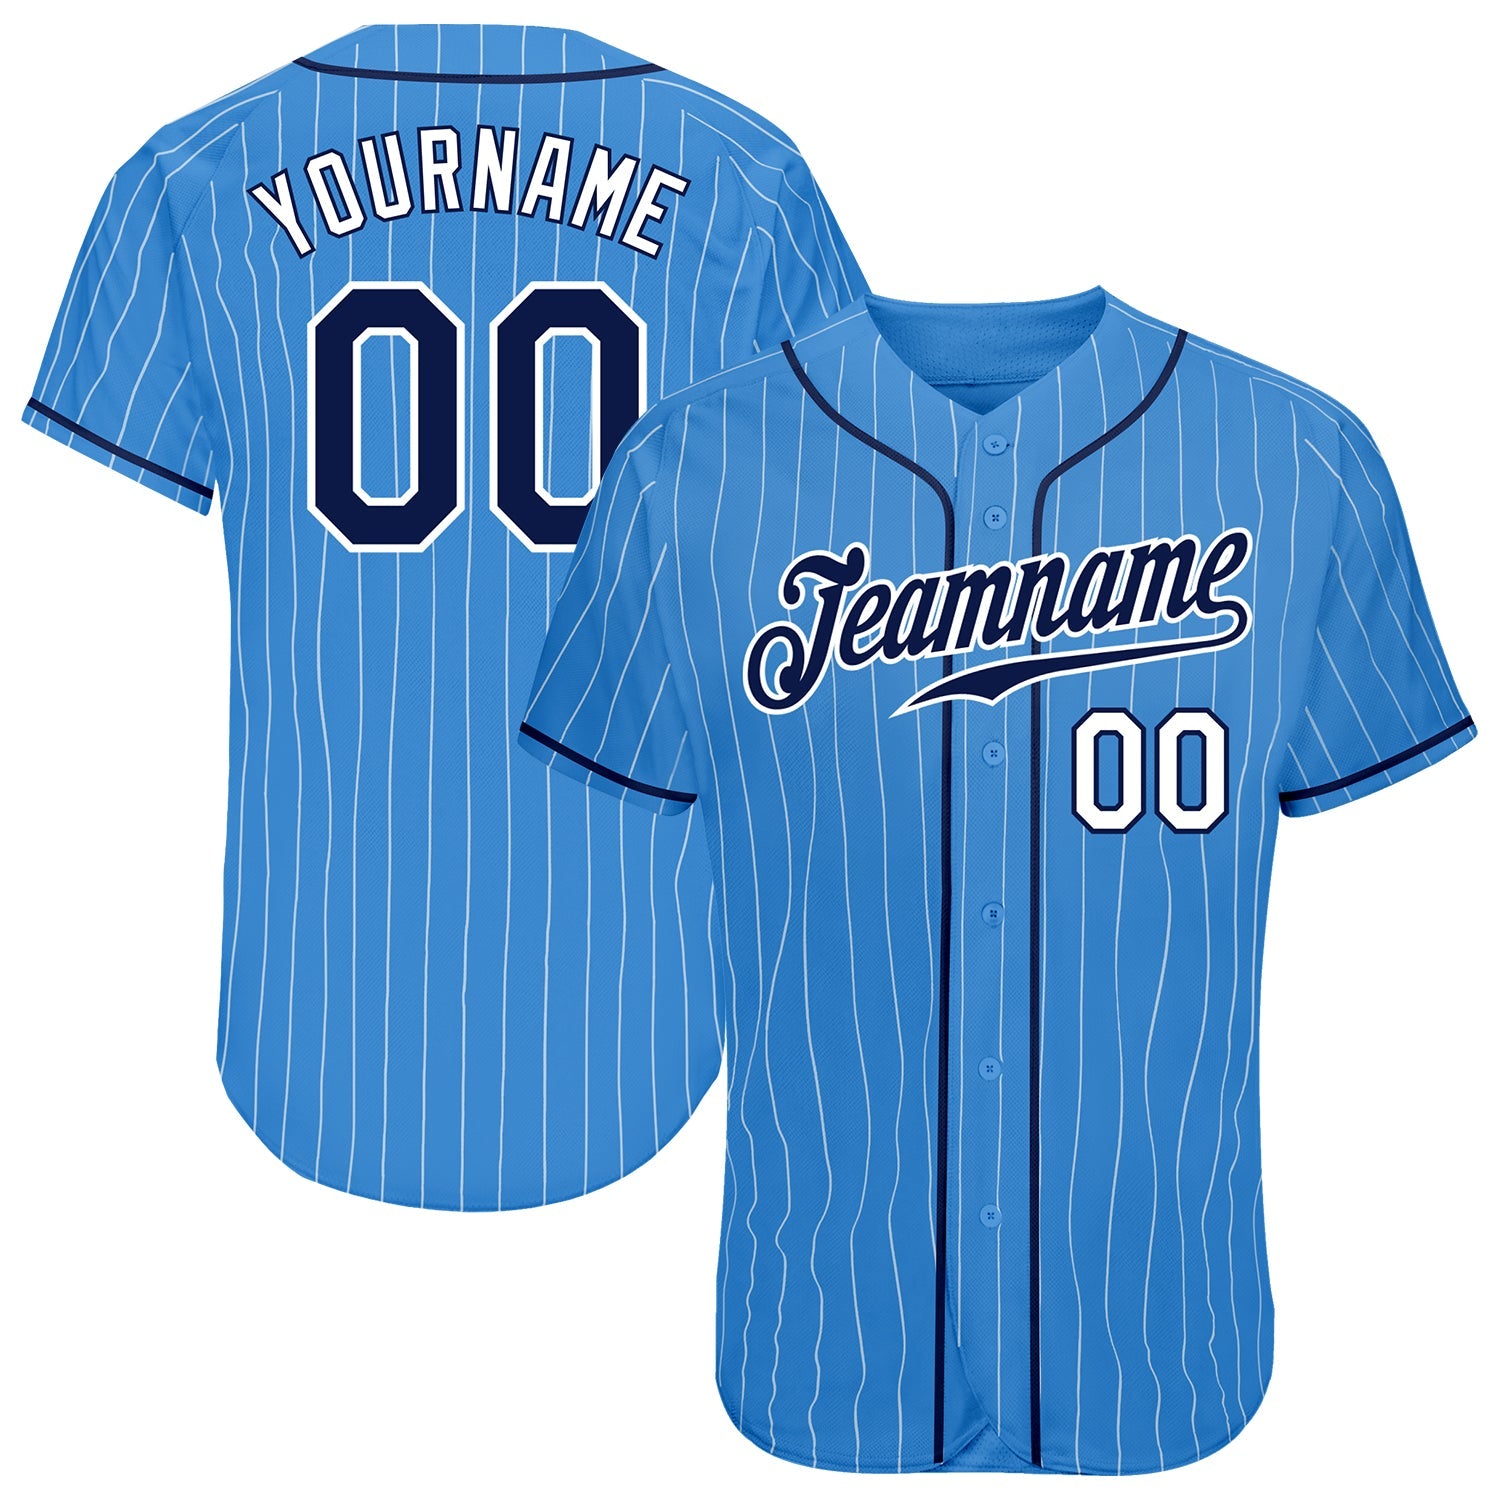 Camisa de beisebol autêntica azul-clara personalizada com riscas brancas e marinho-brancas